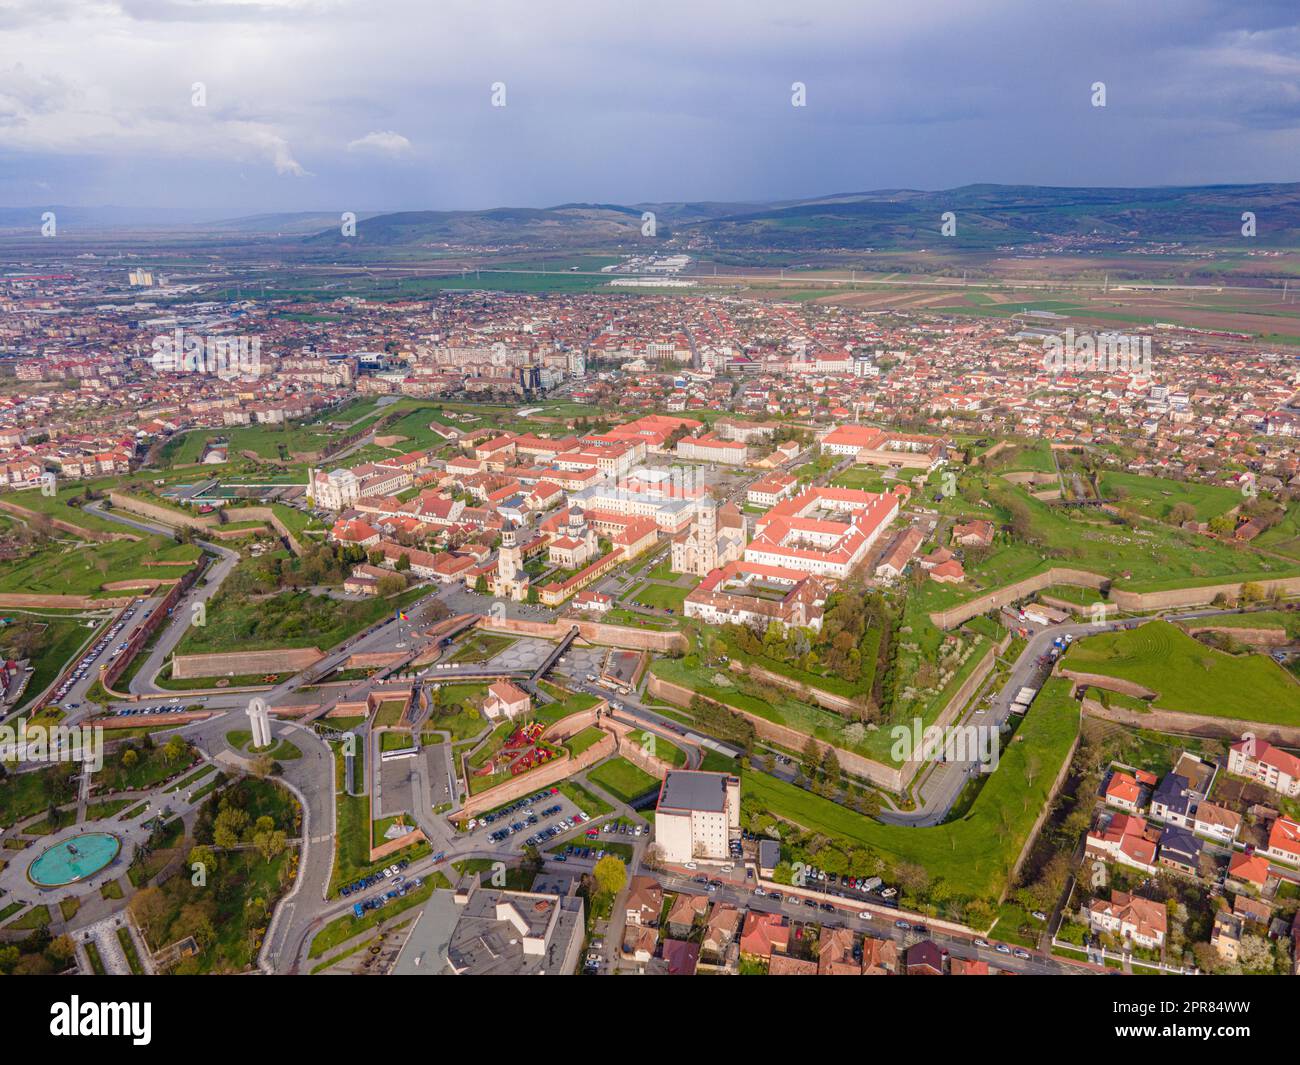 Vue aérienne de la citadelle Alba Carolina située à Alba Iulia, Roumanie. La photographie a été prise à partir d'un drone avec le niveau de la caméra Banque D'Images